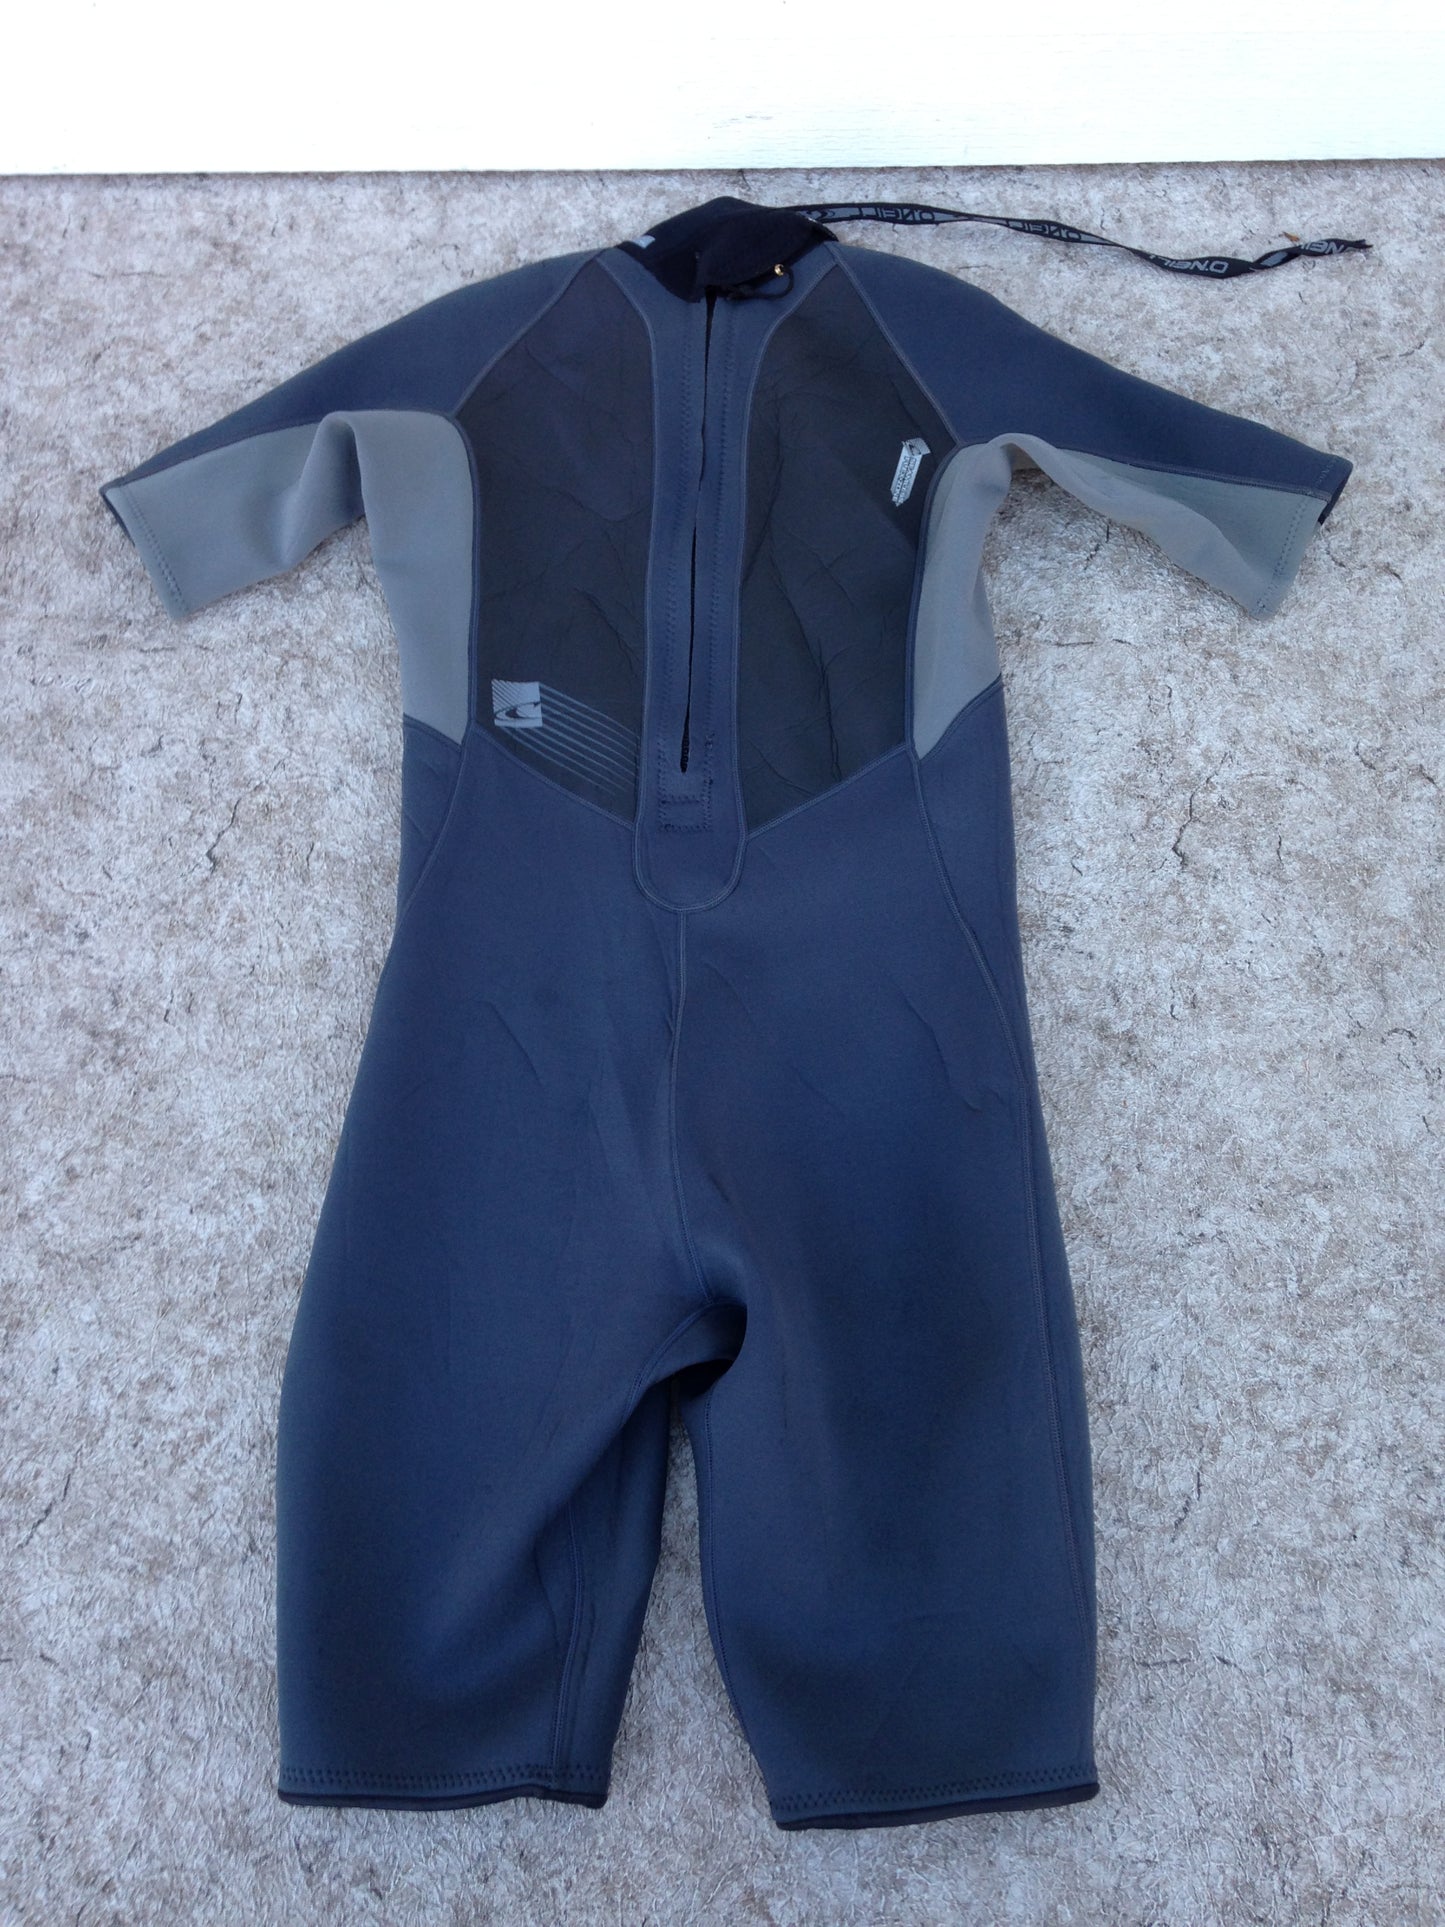 Wetsuit Men's Size Large O'Neil Grey Blue 2-3 mm Excellent